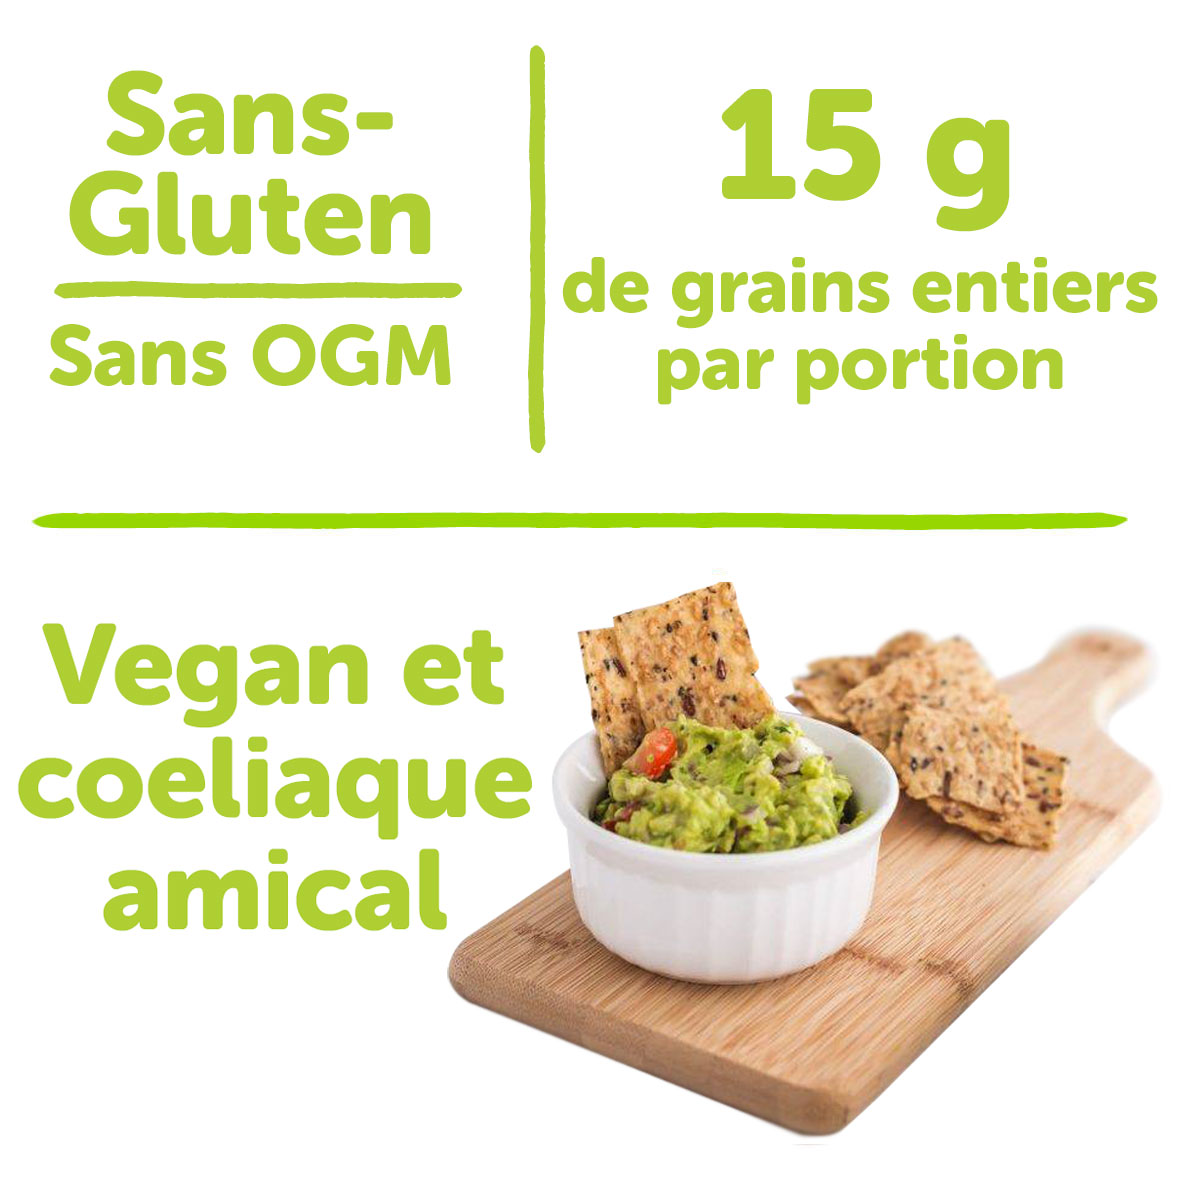 sans-gluten, sans OGM, 15 g de grains entiers par portion, vegan et coeliaque amical